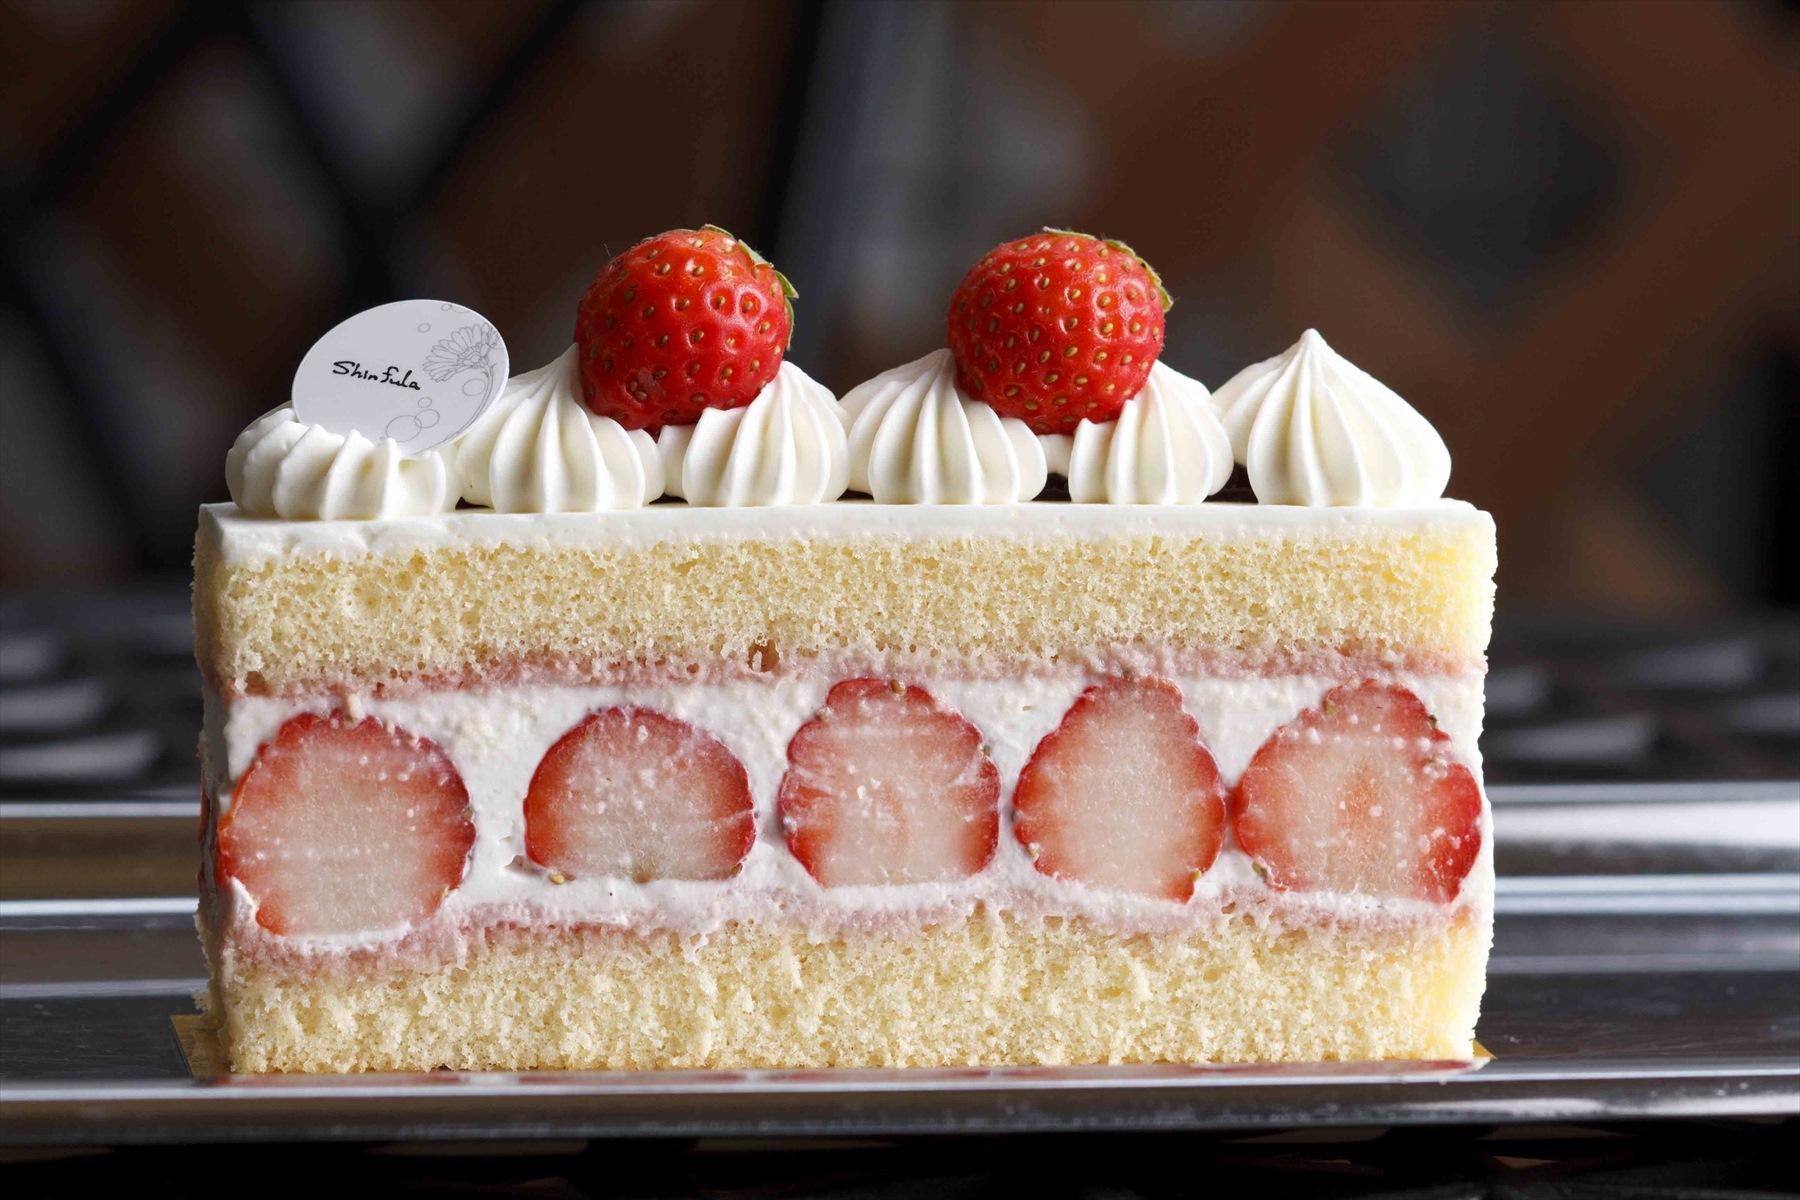 スーパーストロベリーショートケーキ Shinfula のケーキ Shinfula 10個のケーキ 公式 Dancyu ダンチュウ